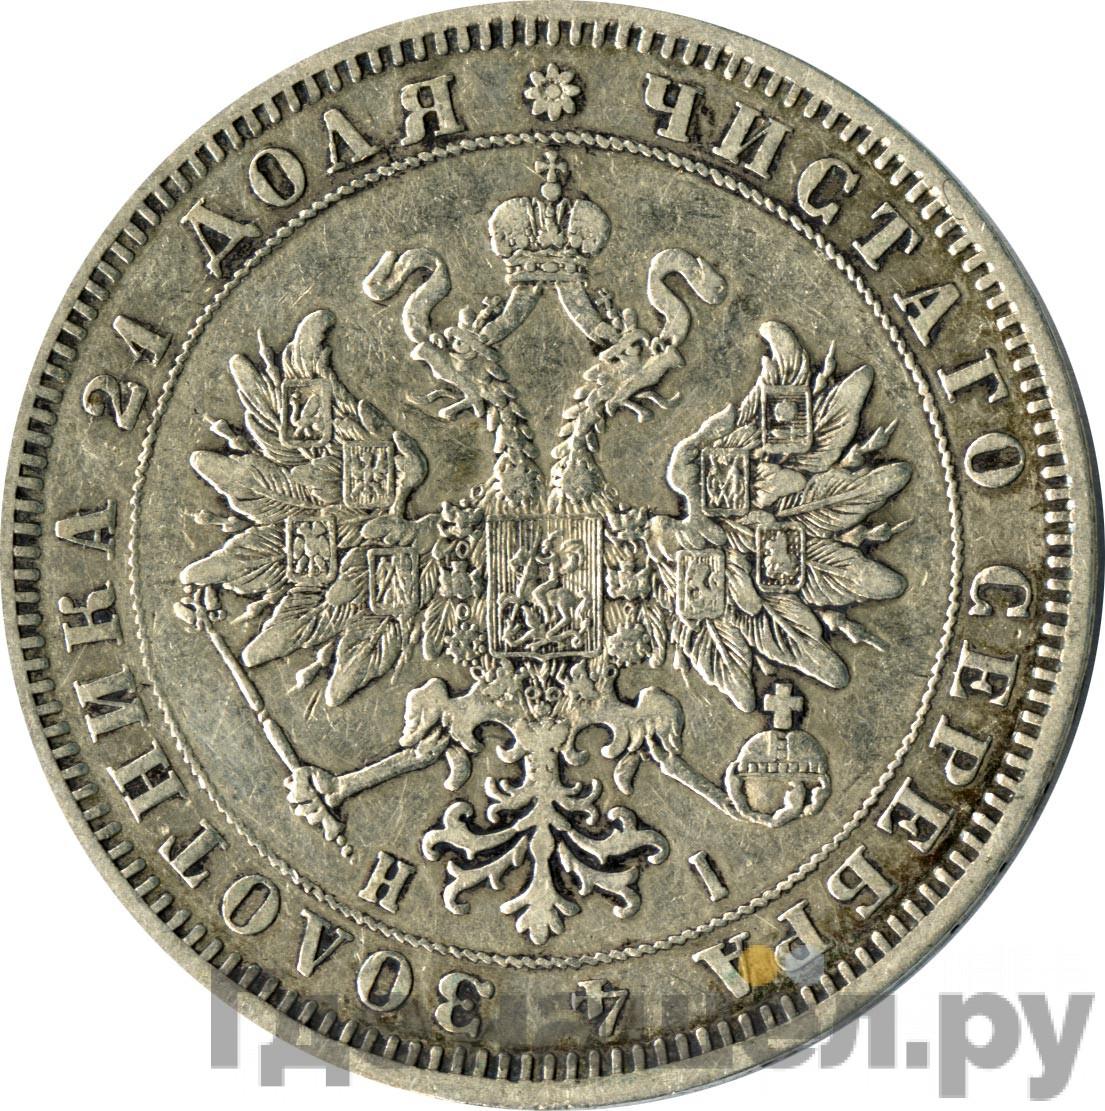 1 рубль 1869 года СПБ НI